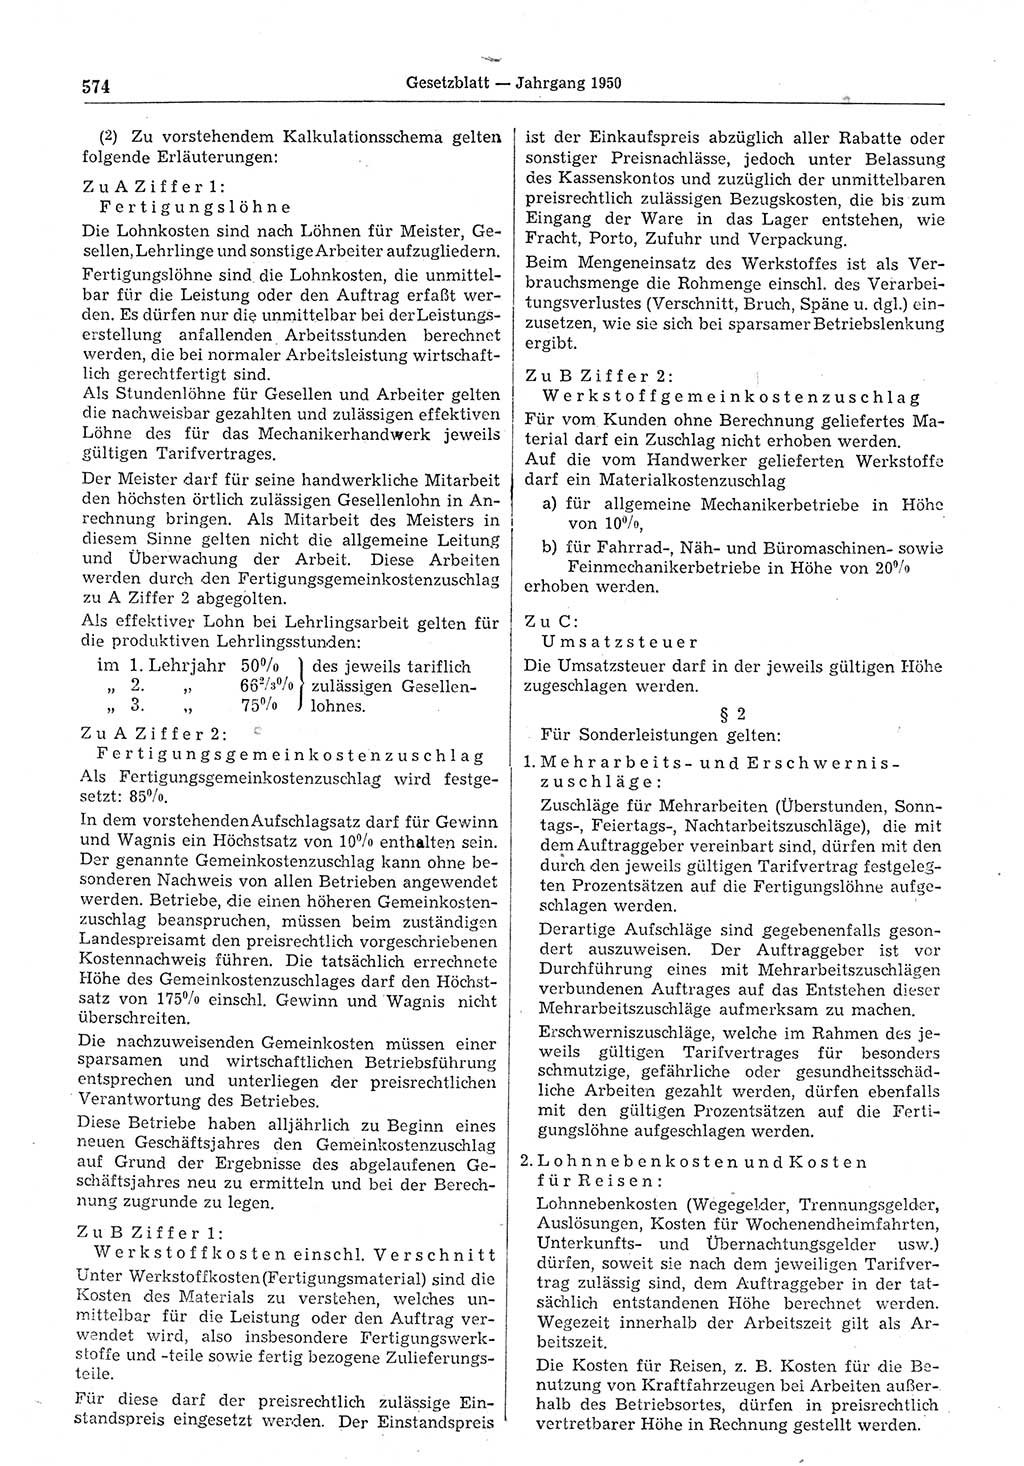 Gesetzblatt (GBl.) der Deutschen Demokratischen Republik (DDR) 1950, Seite 574 (GBl. DDR 1950, S. 574)